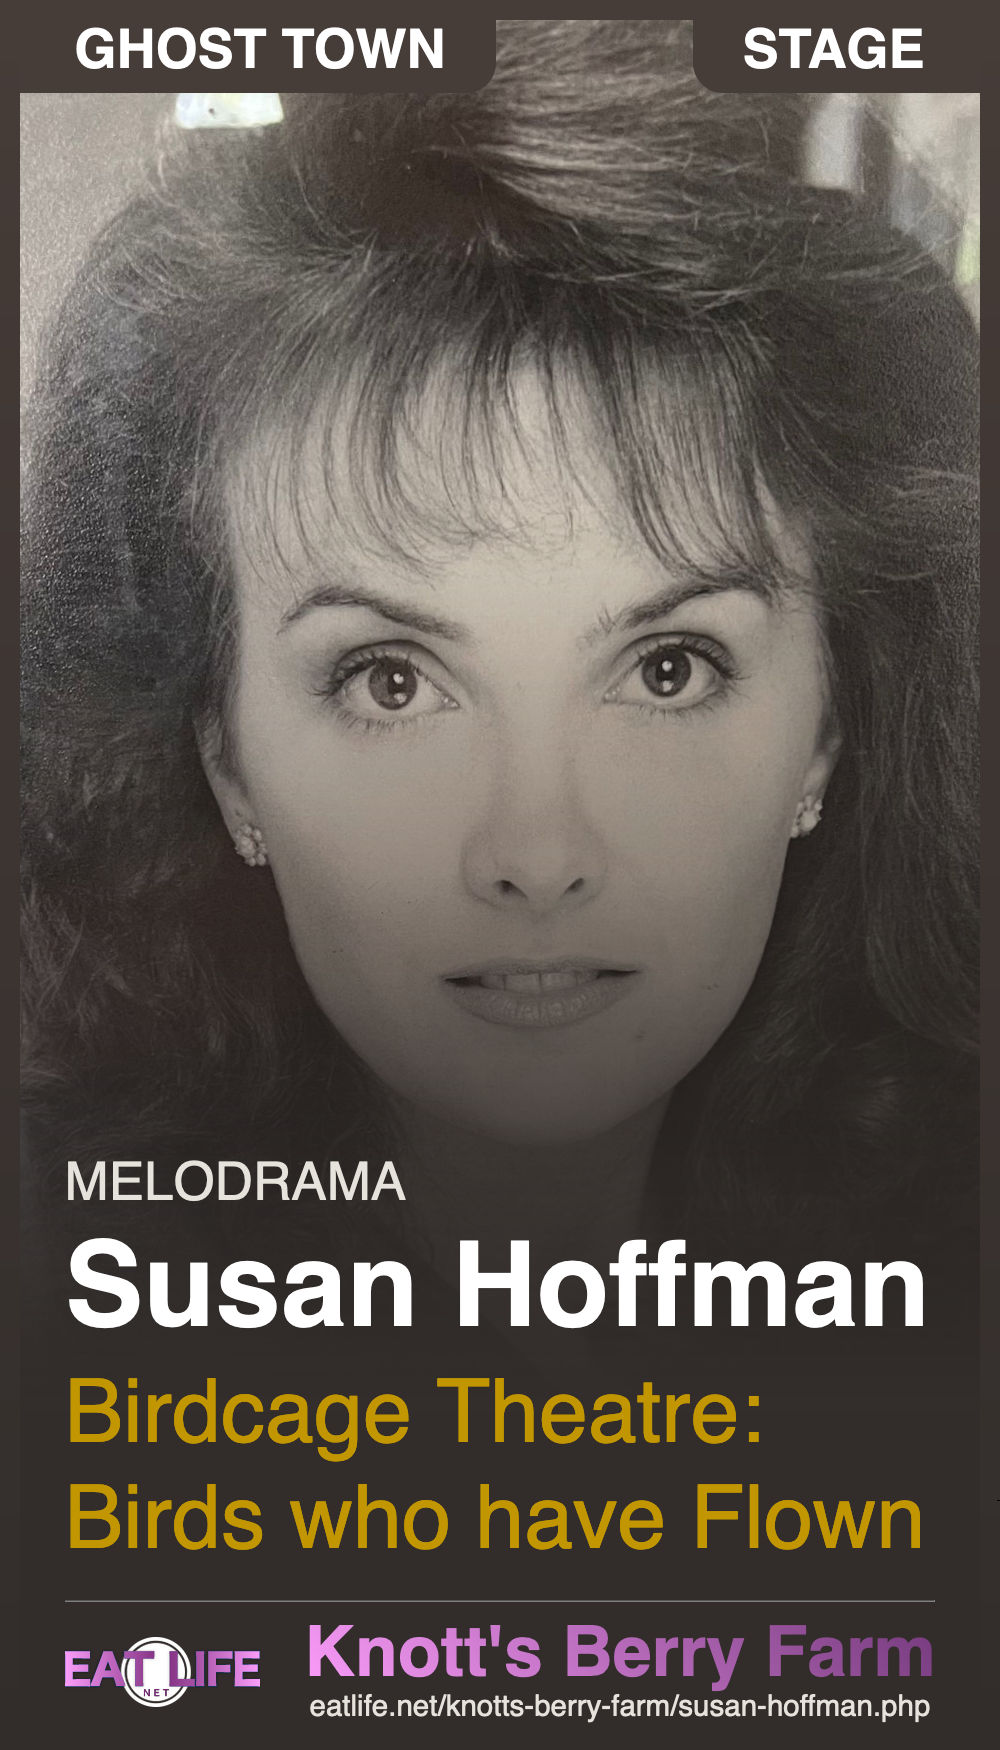 Susan Hoffman